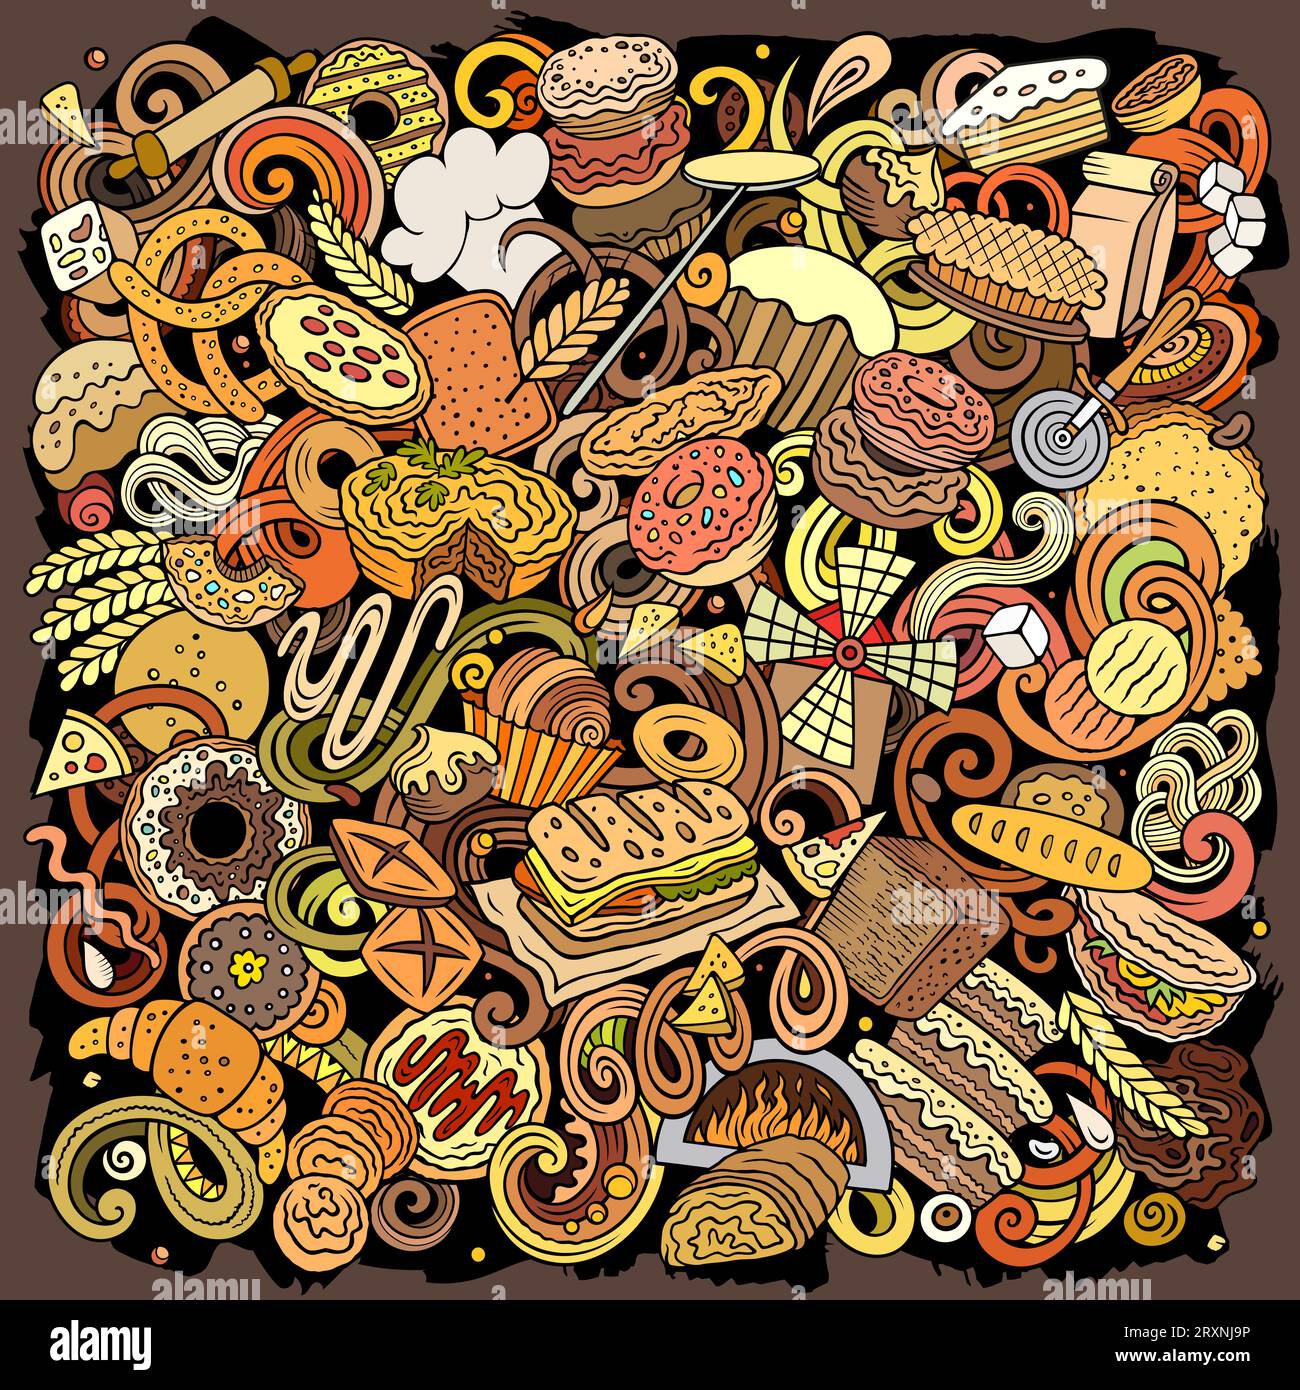 Cartoon Vector Bakery Doodle Illustration zeigt eine Vielzahl von Bäckereiobjekten und Symbolen. Leuchtende Farben skurriles lustiges Bild. Stock Vektor